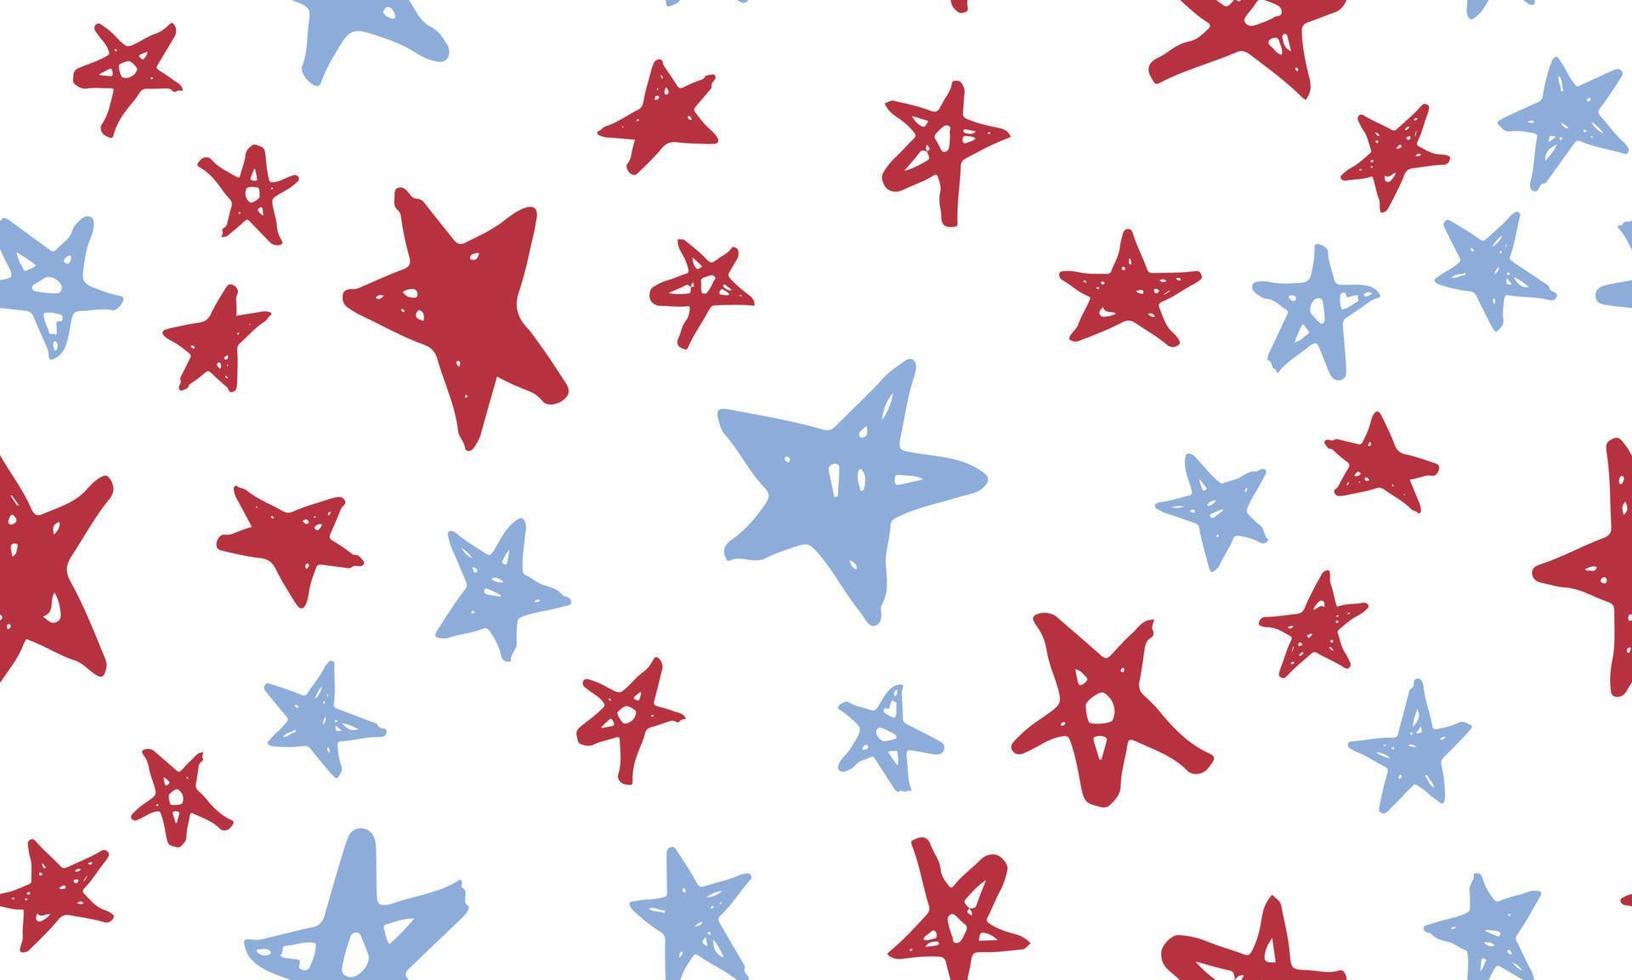 fête de l'indépendance des états-unis. jour du président. illustration dessinée à la main. grunge d'étoiles. vecteur